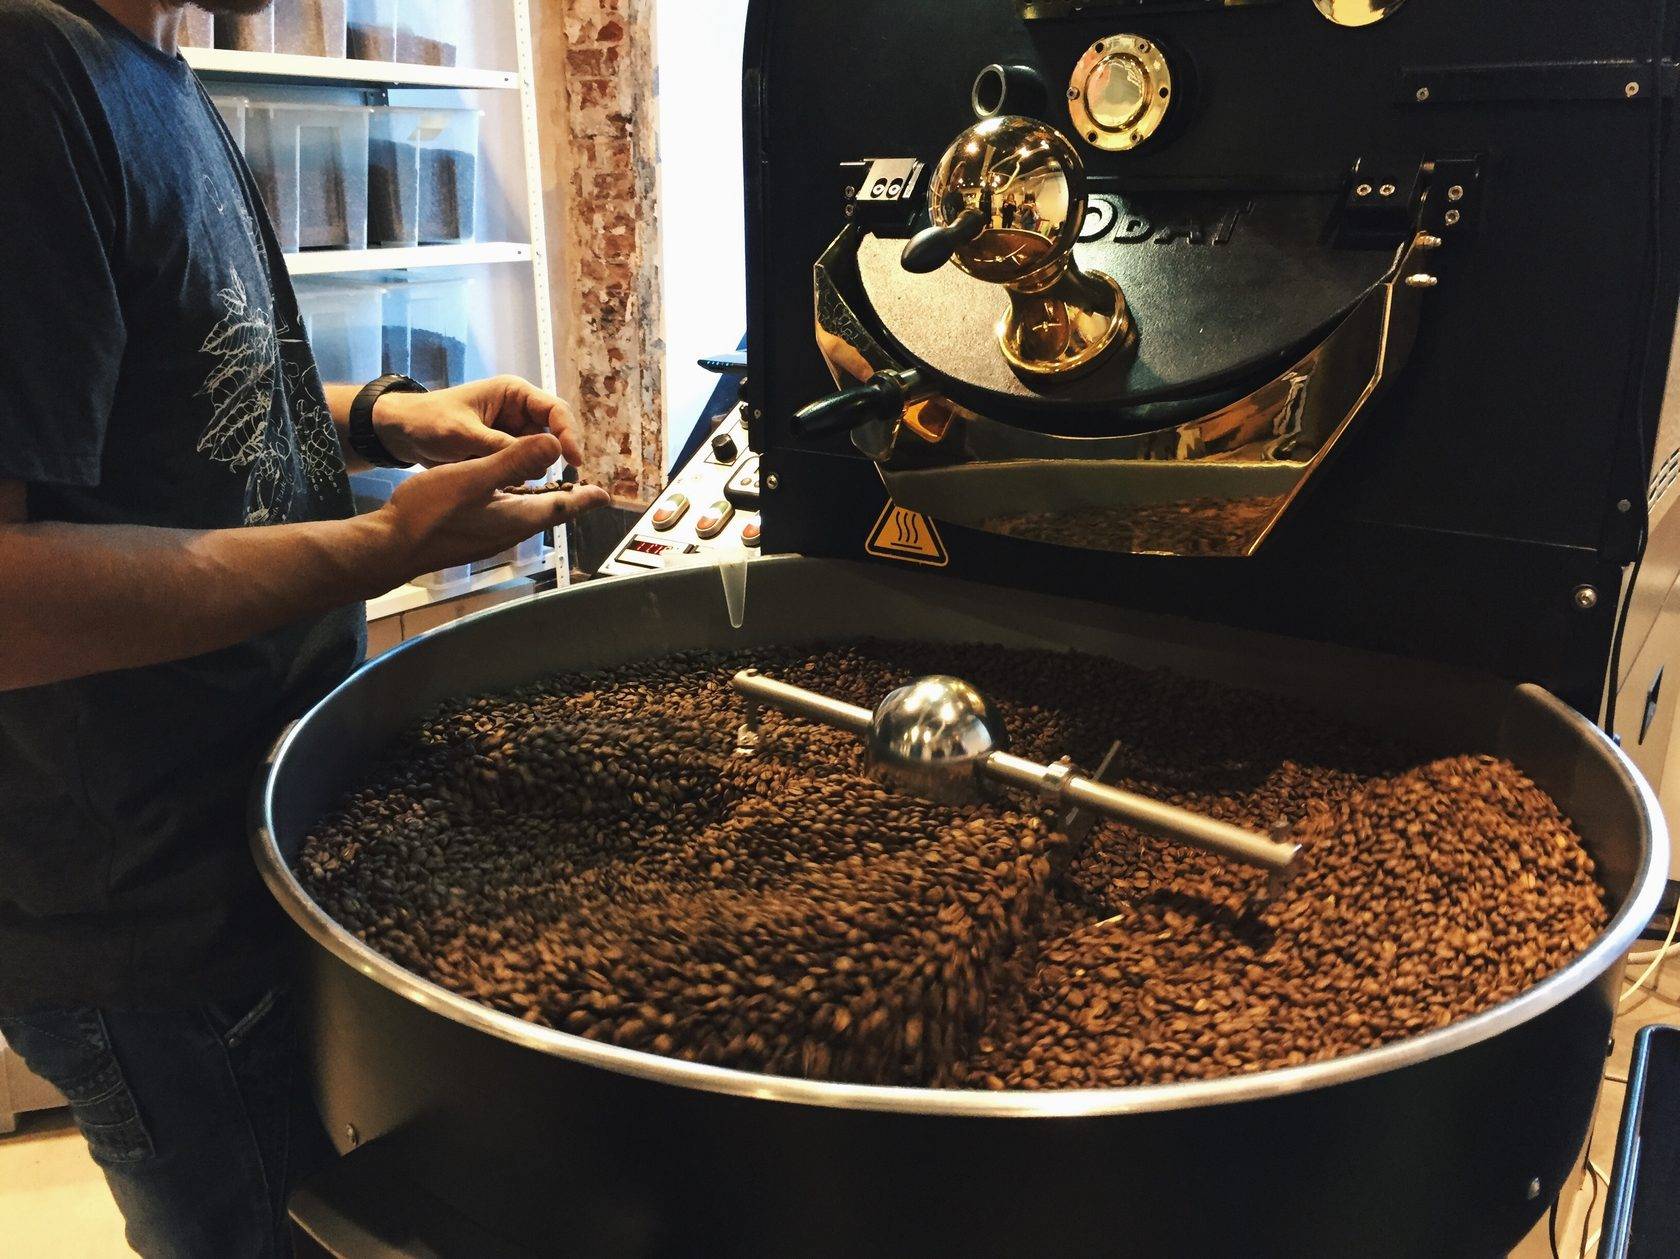 ☕лучшие ростеры для самостоятельной обжарки кофе на 2022 год